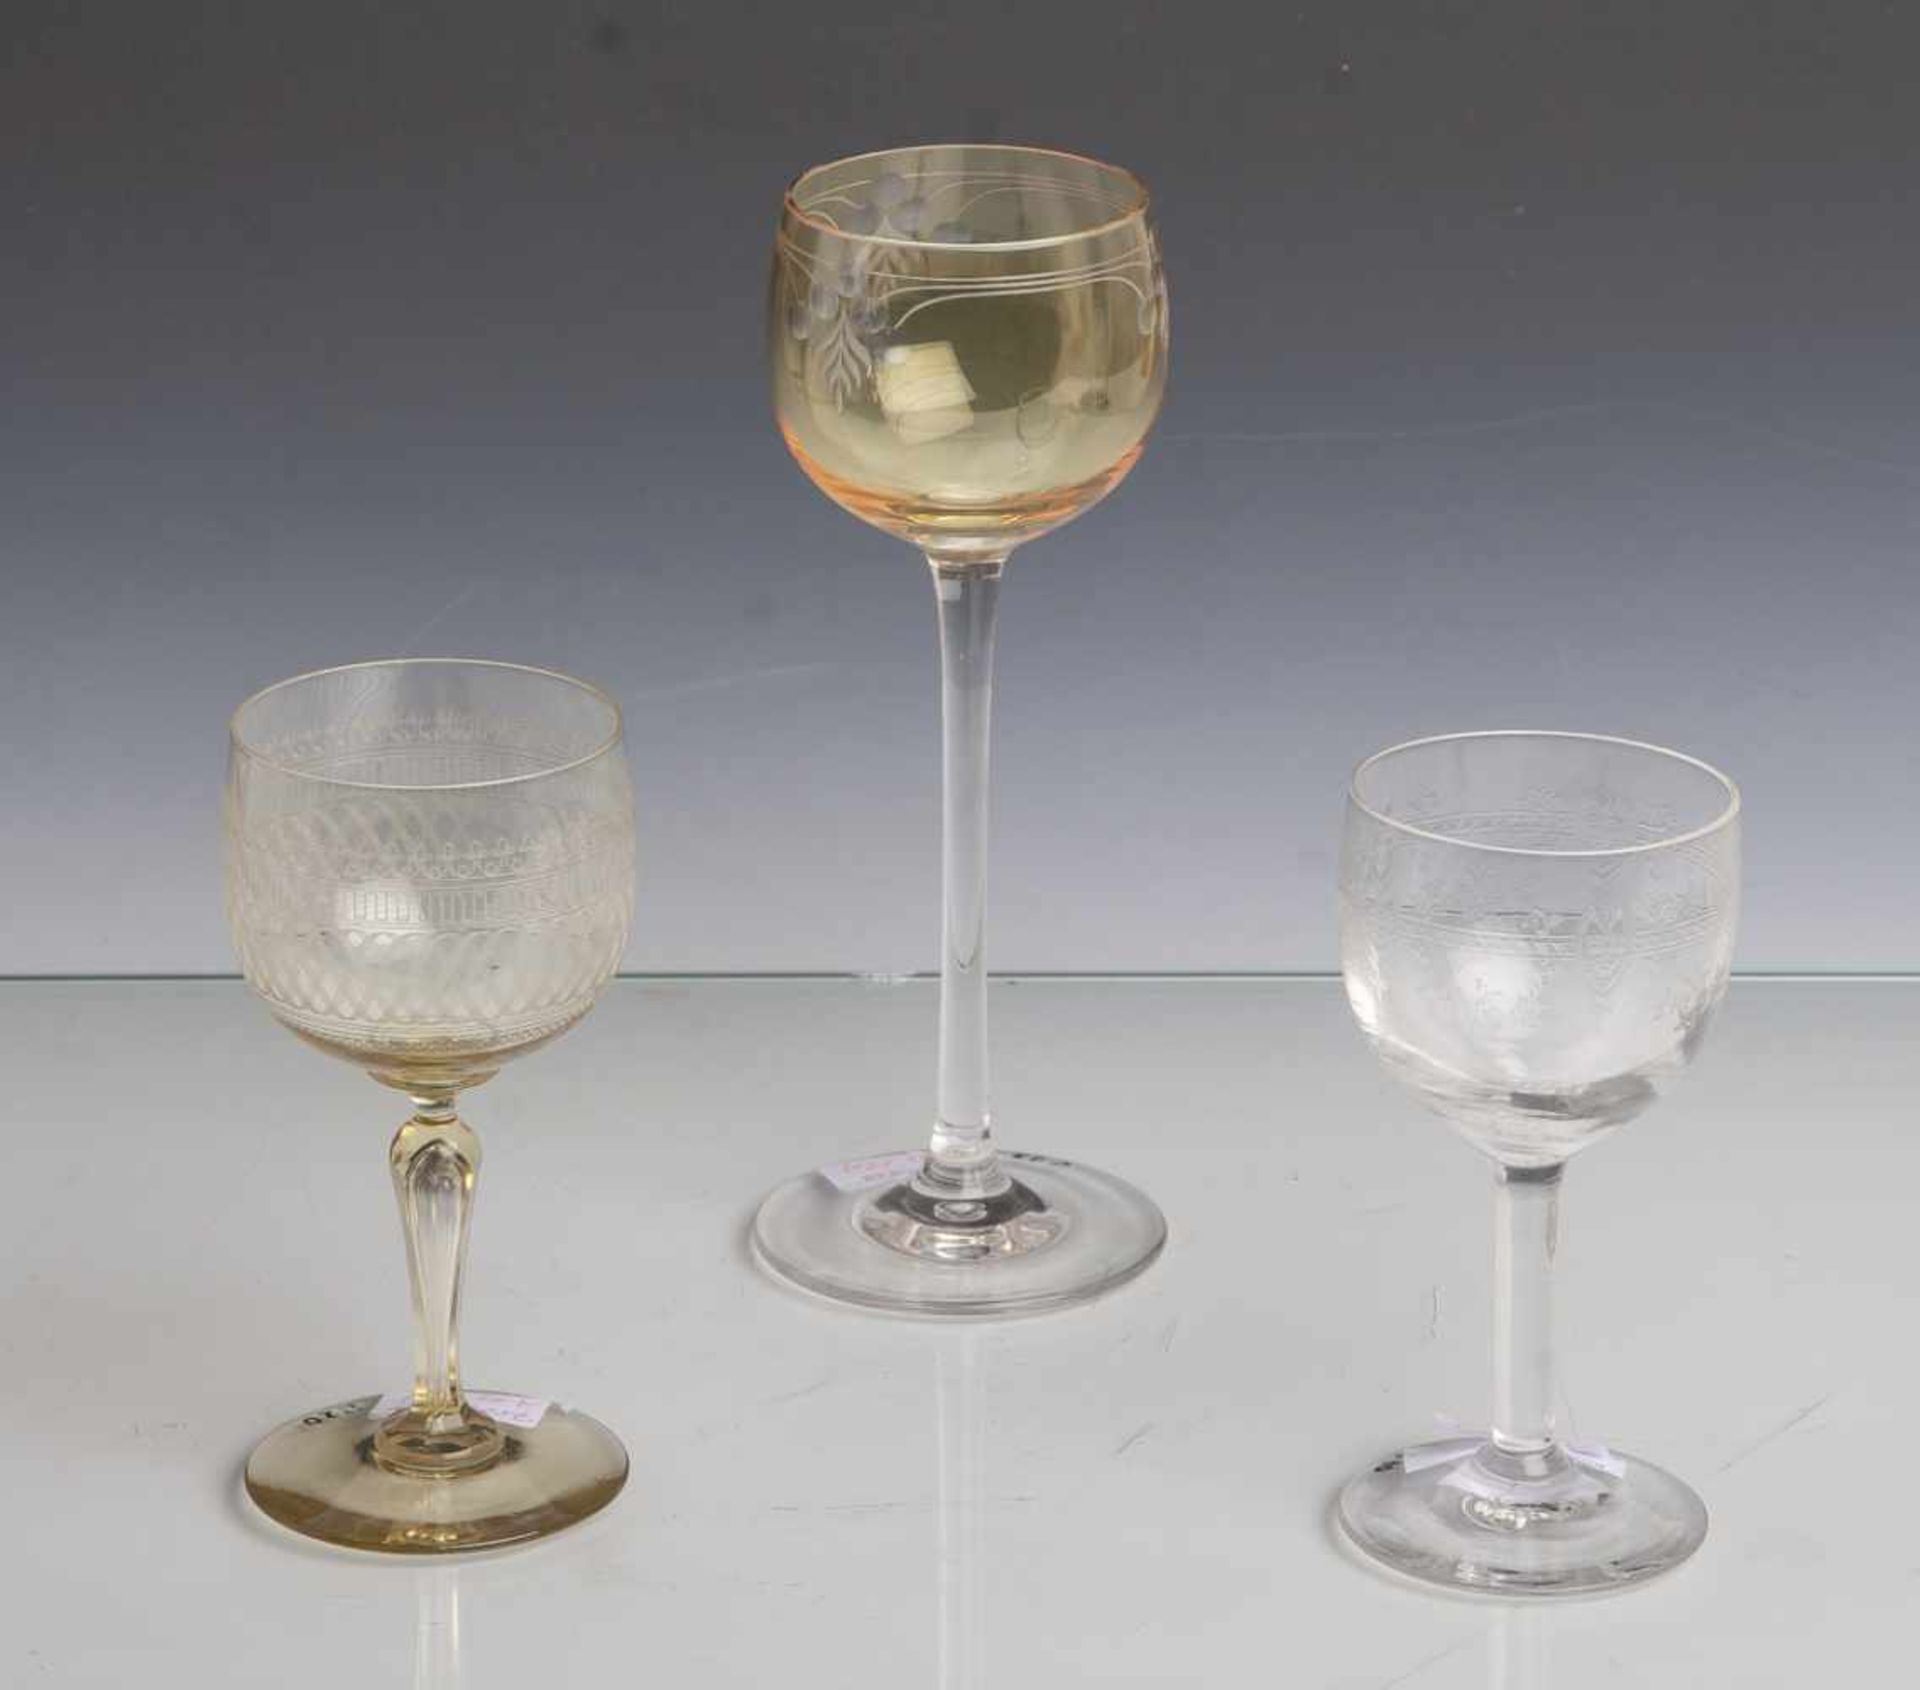 Konvolut von 3 Gläsern: Stengelglas, farbloses Glas, gelb gefärbte Kuppa mit